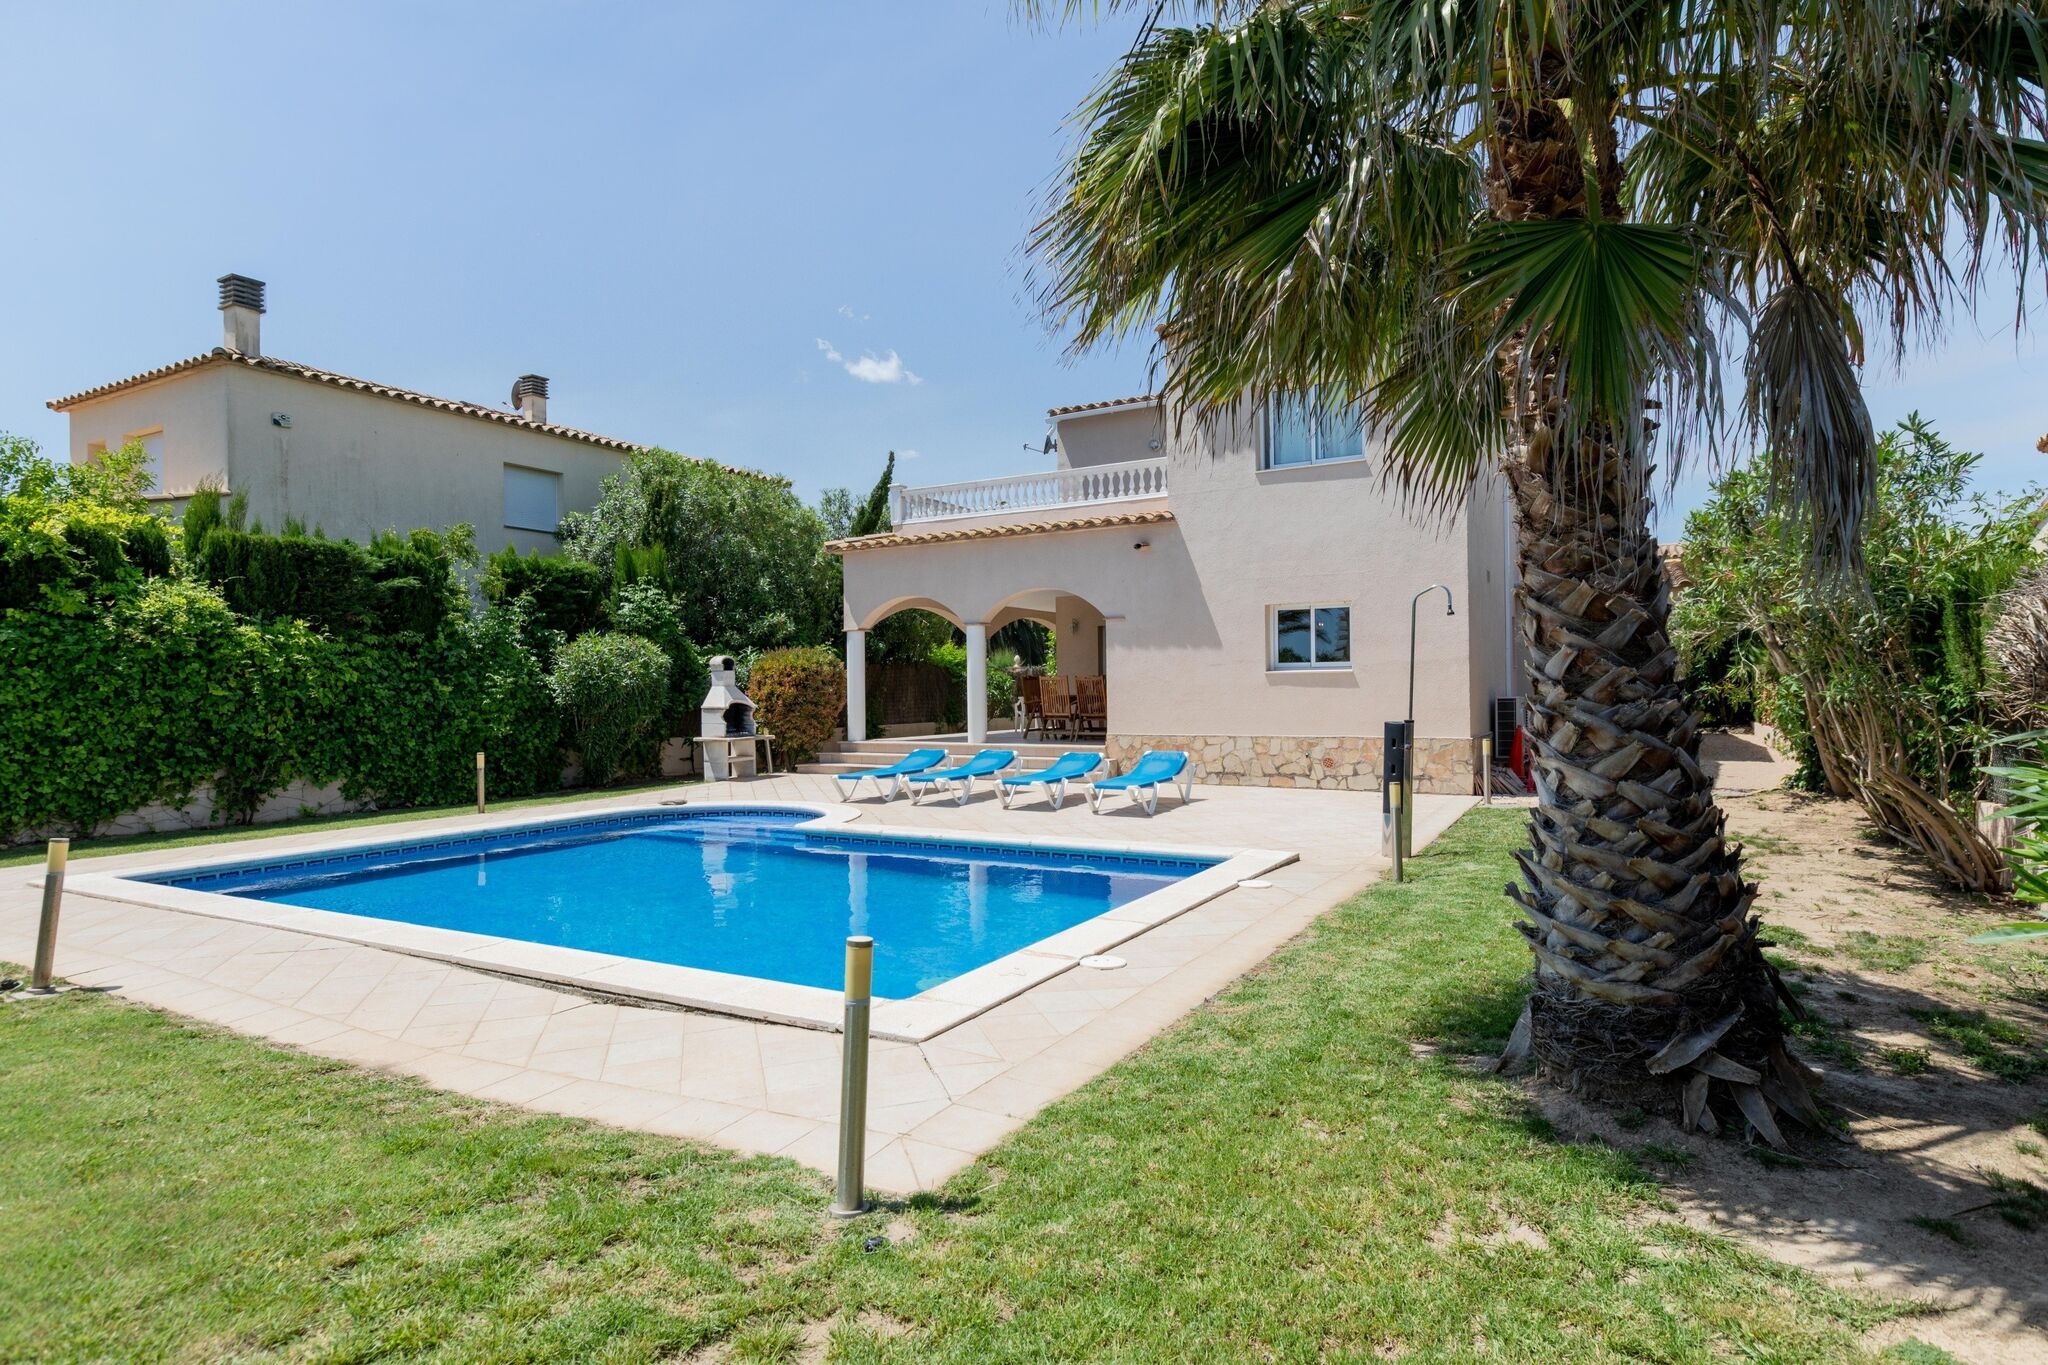 Vrijstaande villa in Sant Pere Pescador met privézwembad